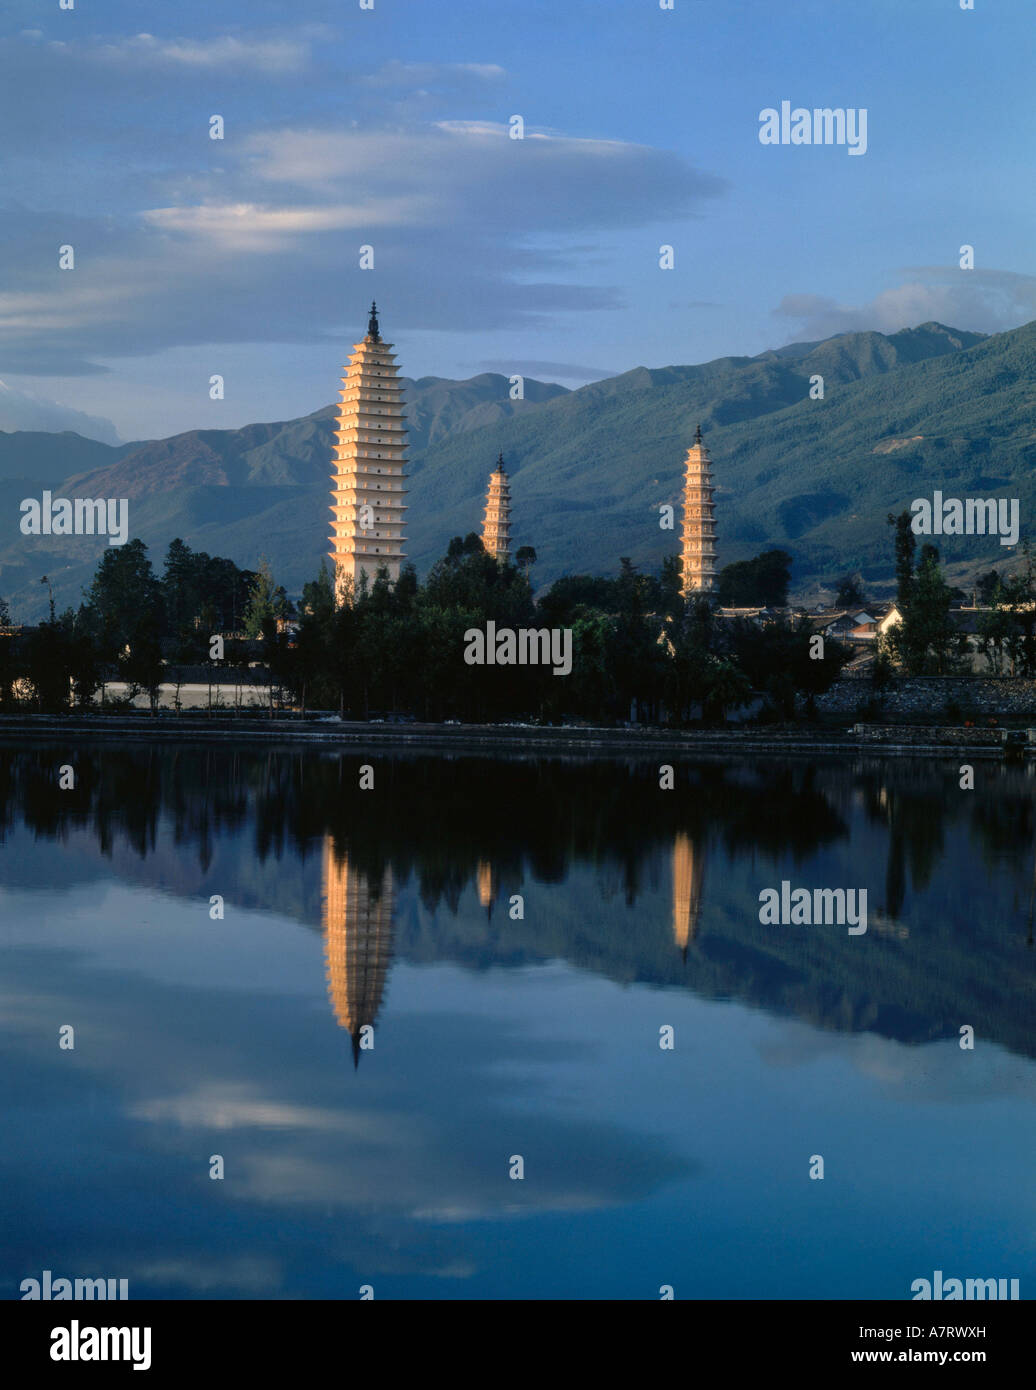 Pagodas reflected in river at dusk, China Stock Photo